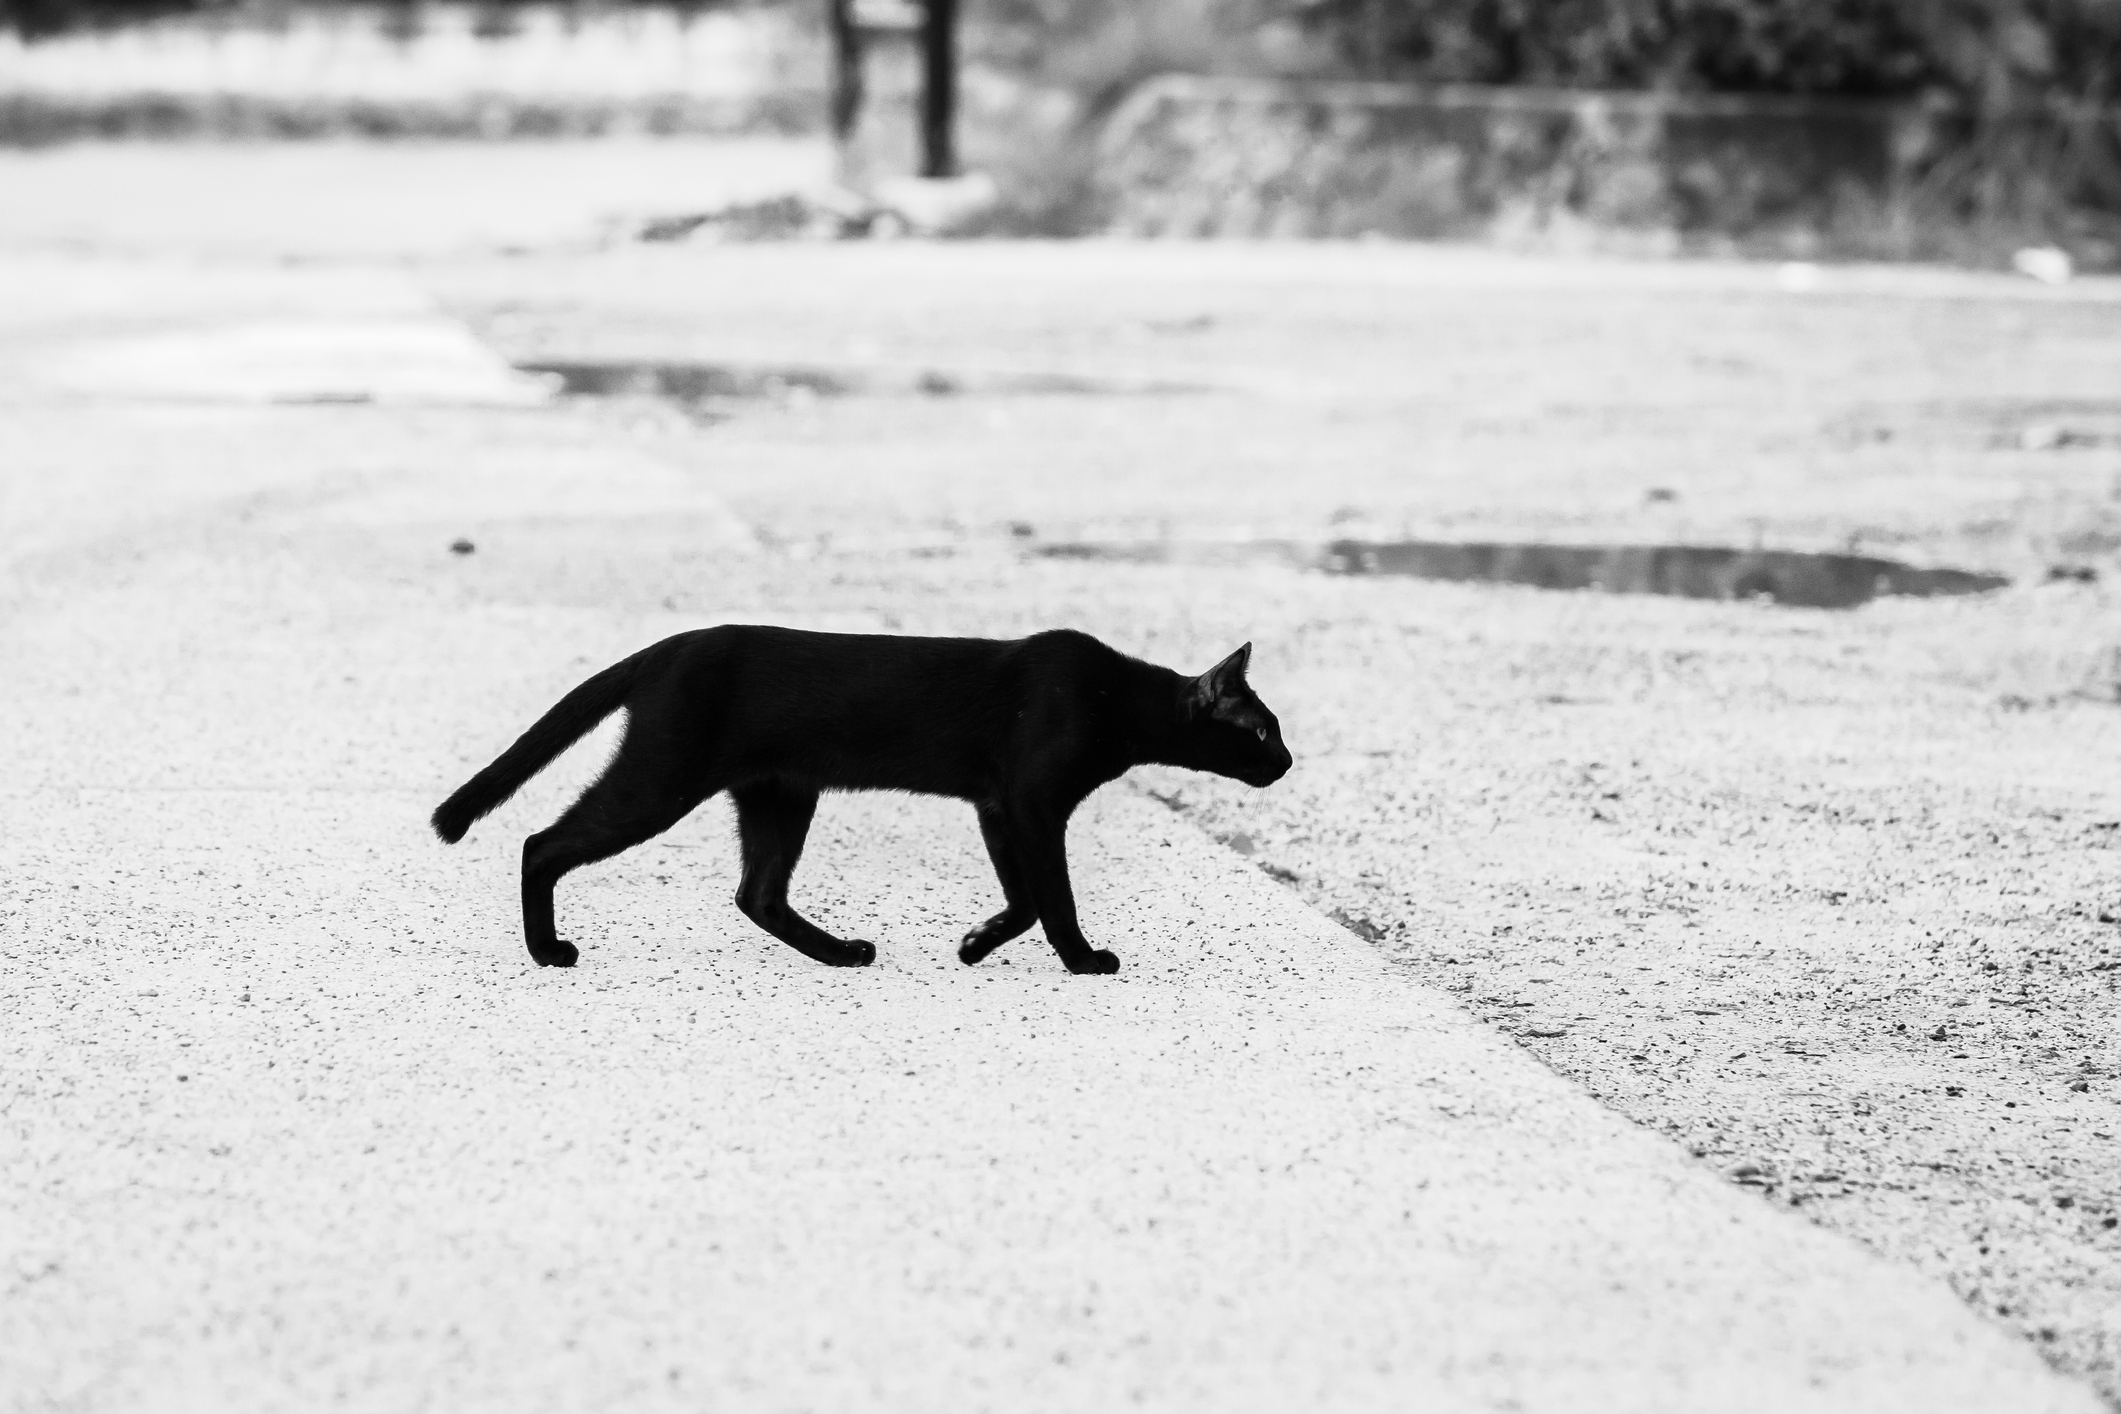 A black cat walking on a walkway